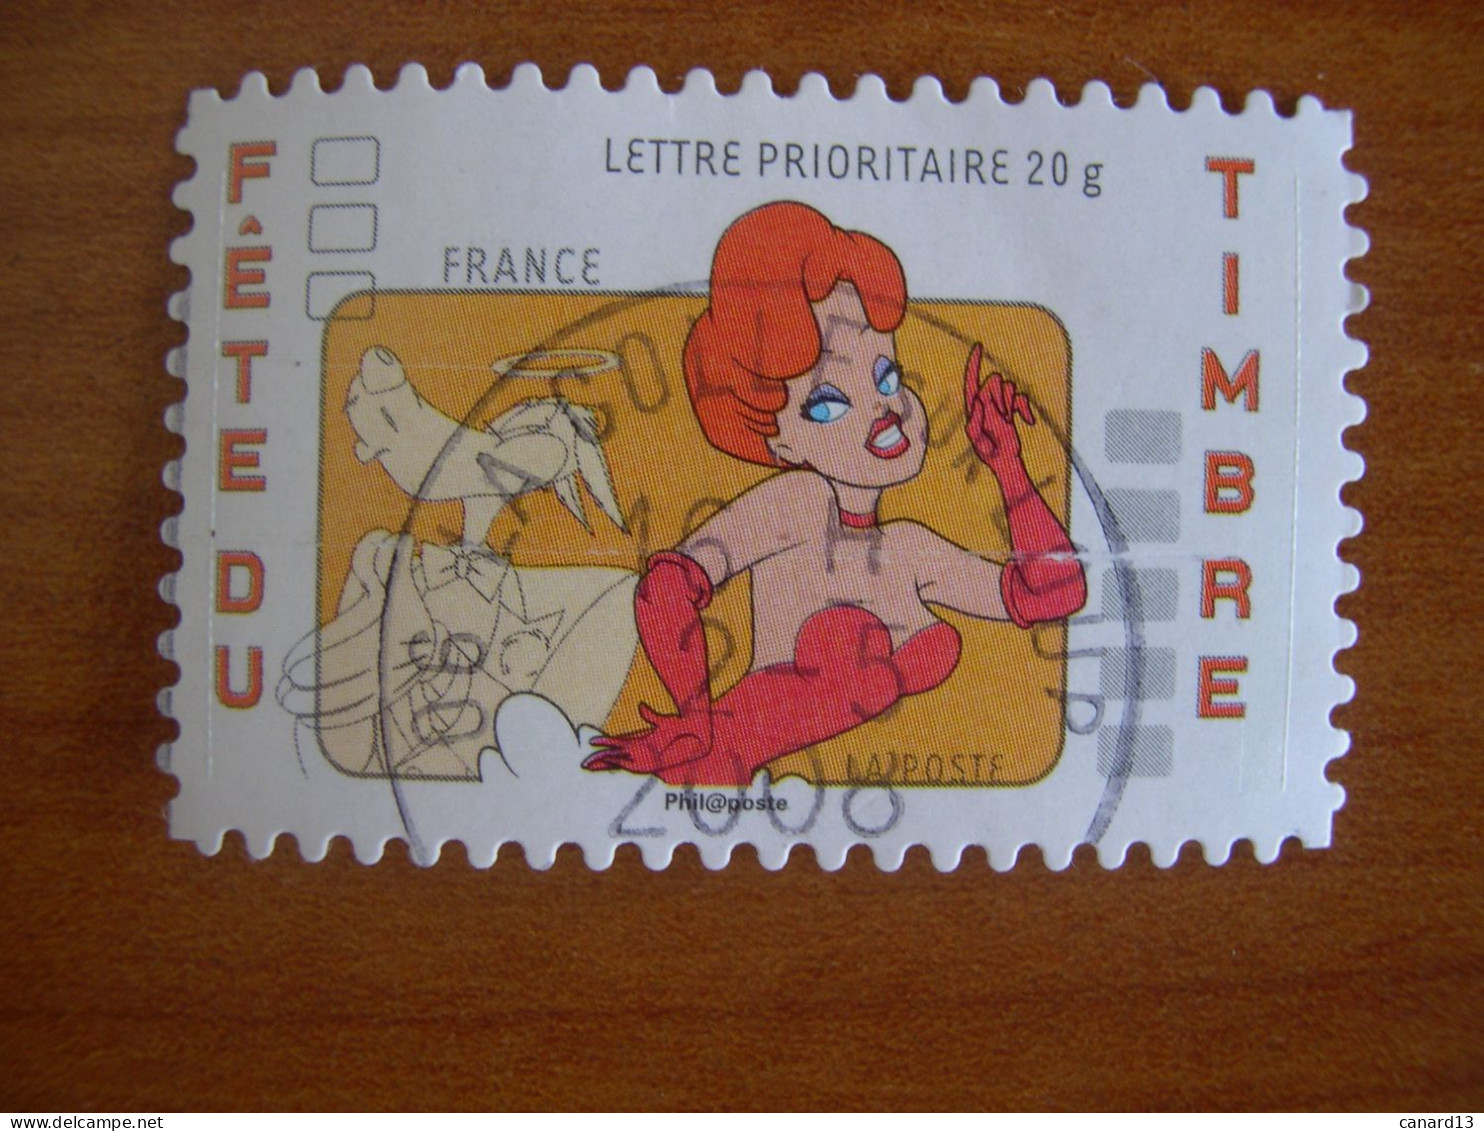 France Obl   N° 161 Cachet Rond Noir - Used Stamps